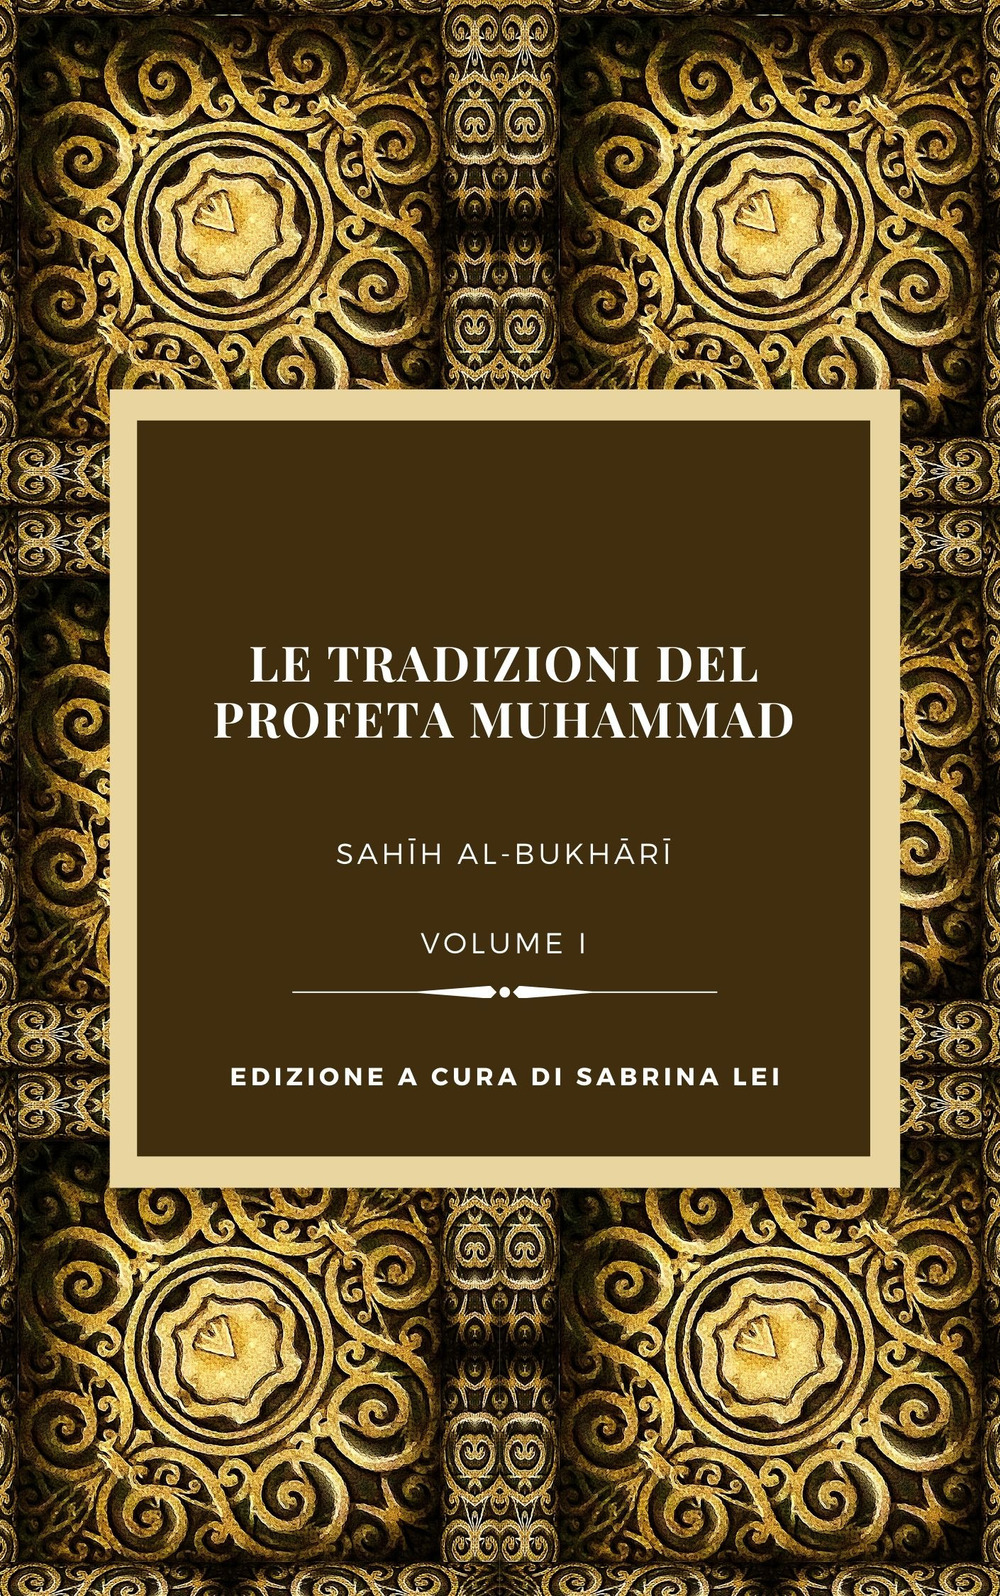 Le tradizioni del Profeta Muhammad. Sahih al-Bukhari. Vol. 1